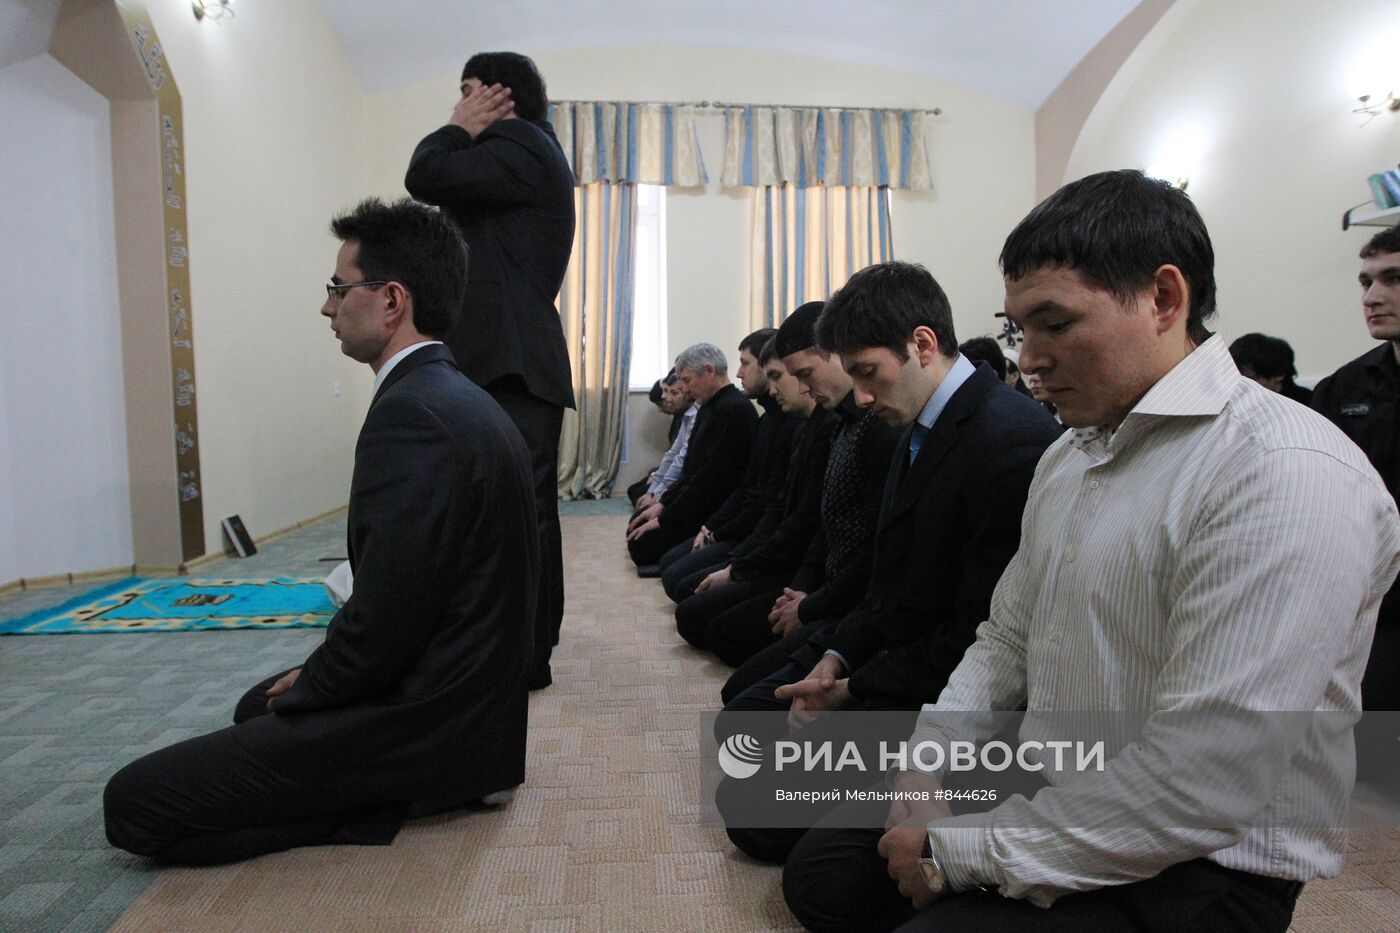 Подследственные - мусульмане во время молитвы